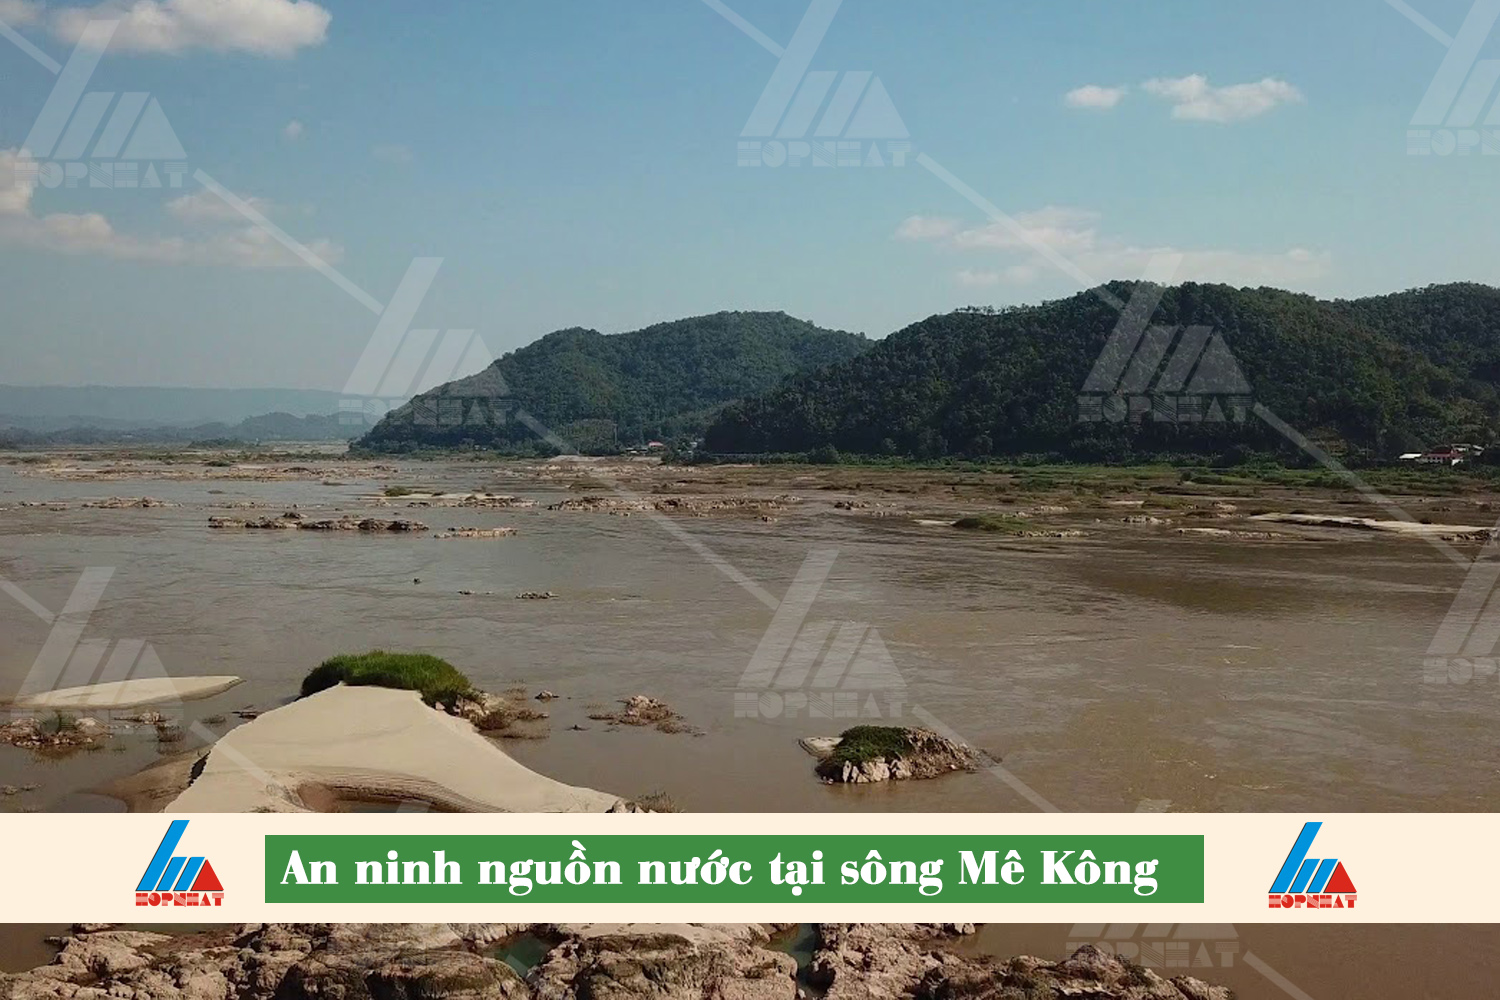 Sông Mê Kông là con sông lớn thế giới với điểm khởi nguồn từ cao nguyên Tây Tạng (Trung Quốc) và chảy qua các quốc gia Myanmar, Lào, Thái Lan, Campuchia và Việt Nam.